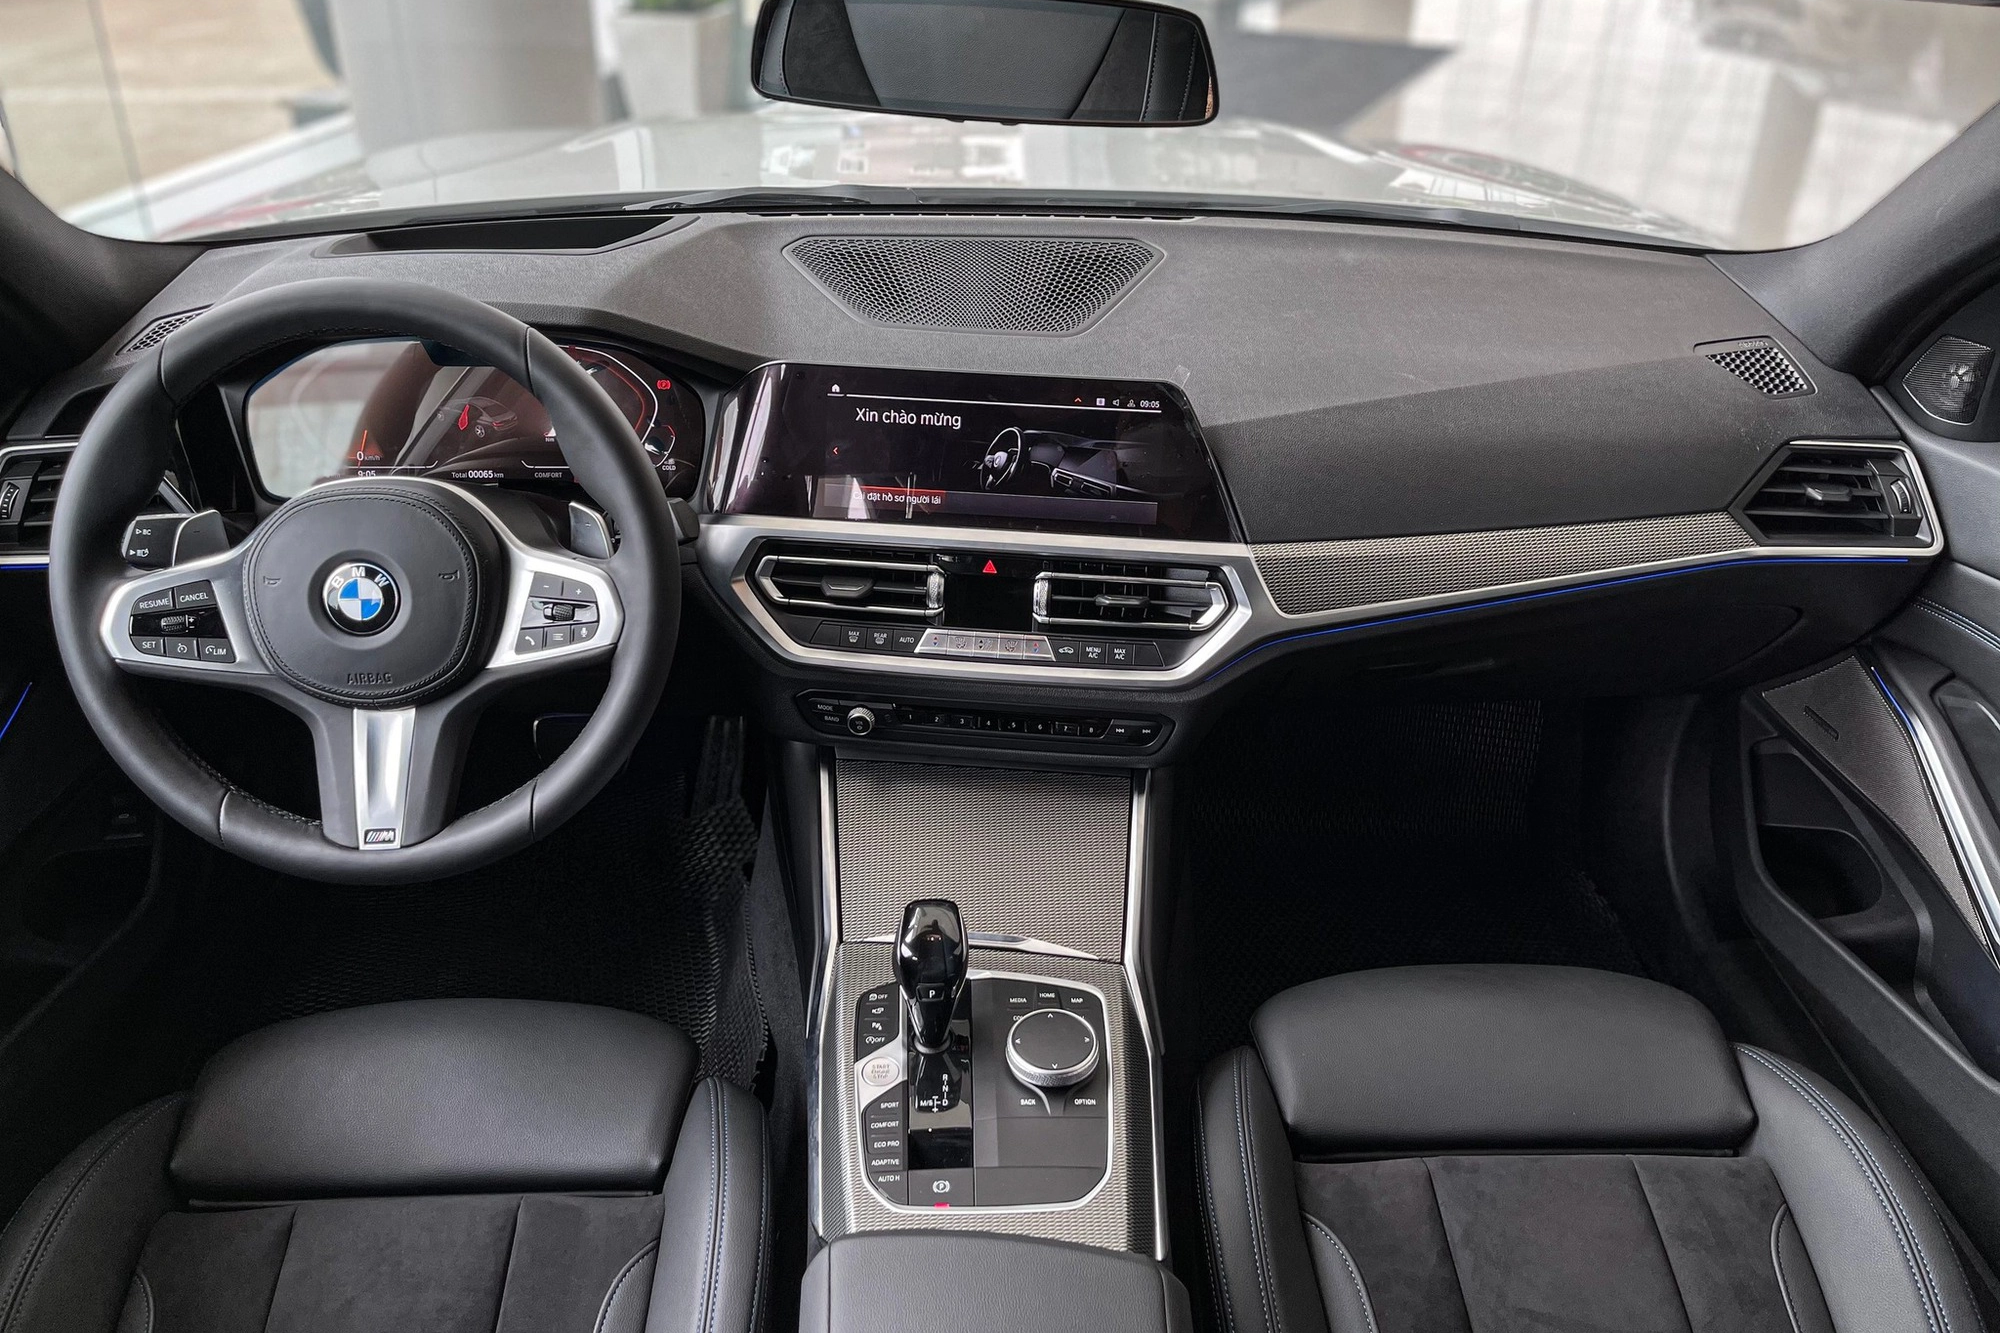 Ảnh chi tiết BMW 3 Series lắp ráp: Nâng cấp nhiều trang bị từ bản tiêu chuẩn, rẻ hơn xe nhập 815 triệu đồng - Ảnh 6.